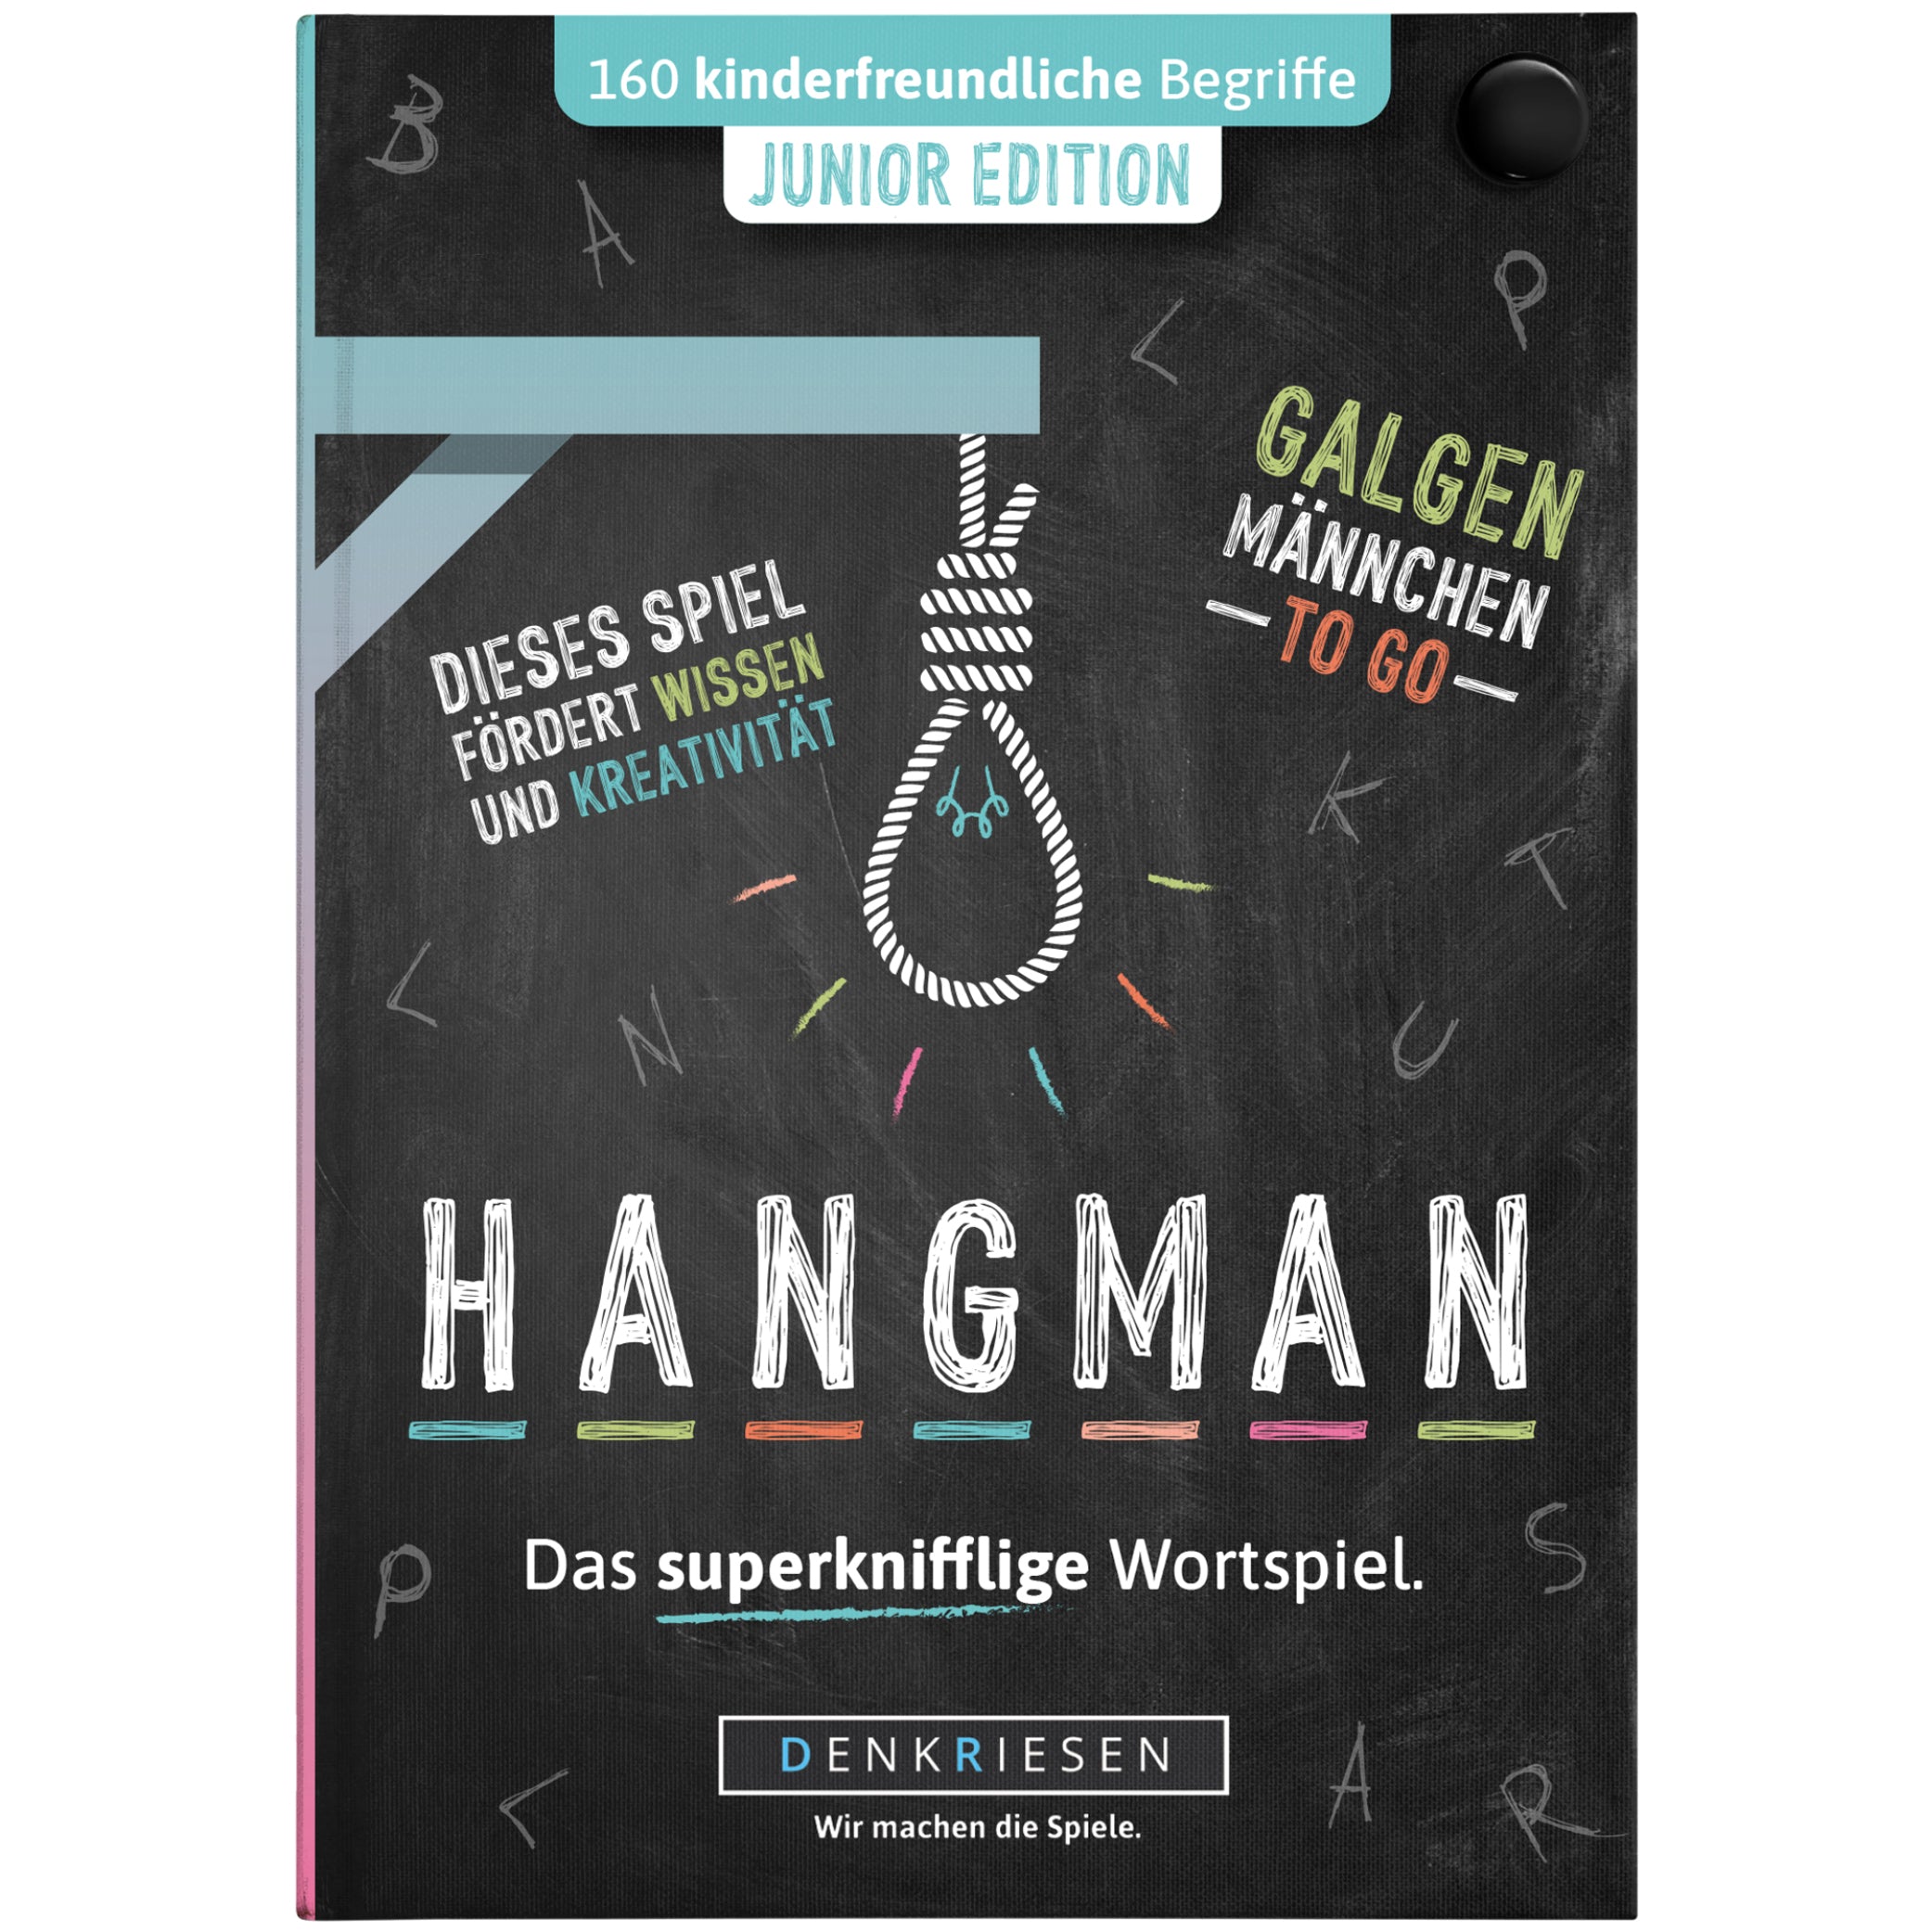 HANGMAN® | Junior Edition – "Das superknifflige Wortspiel."